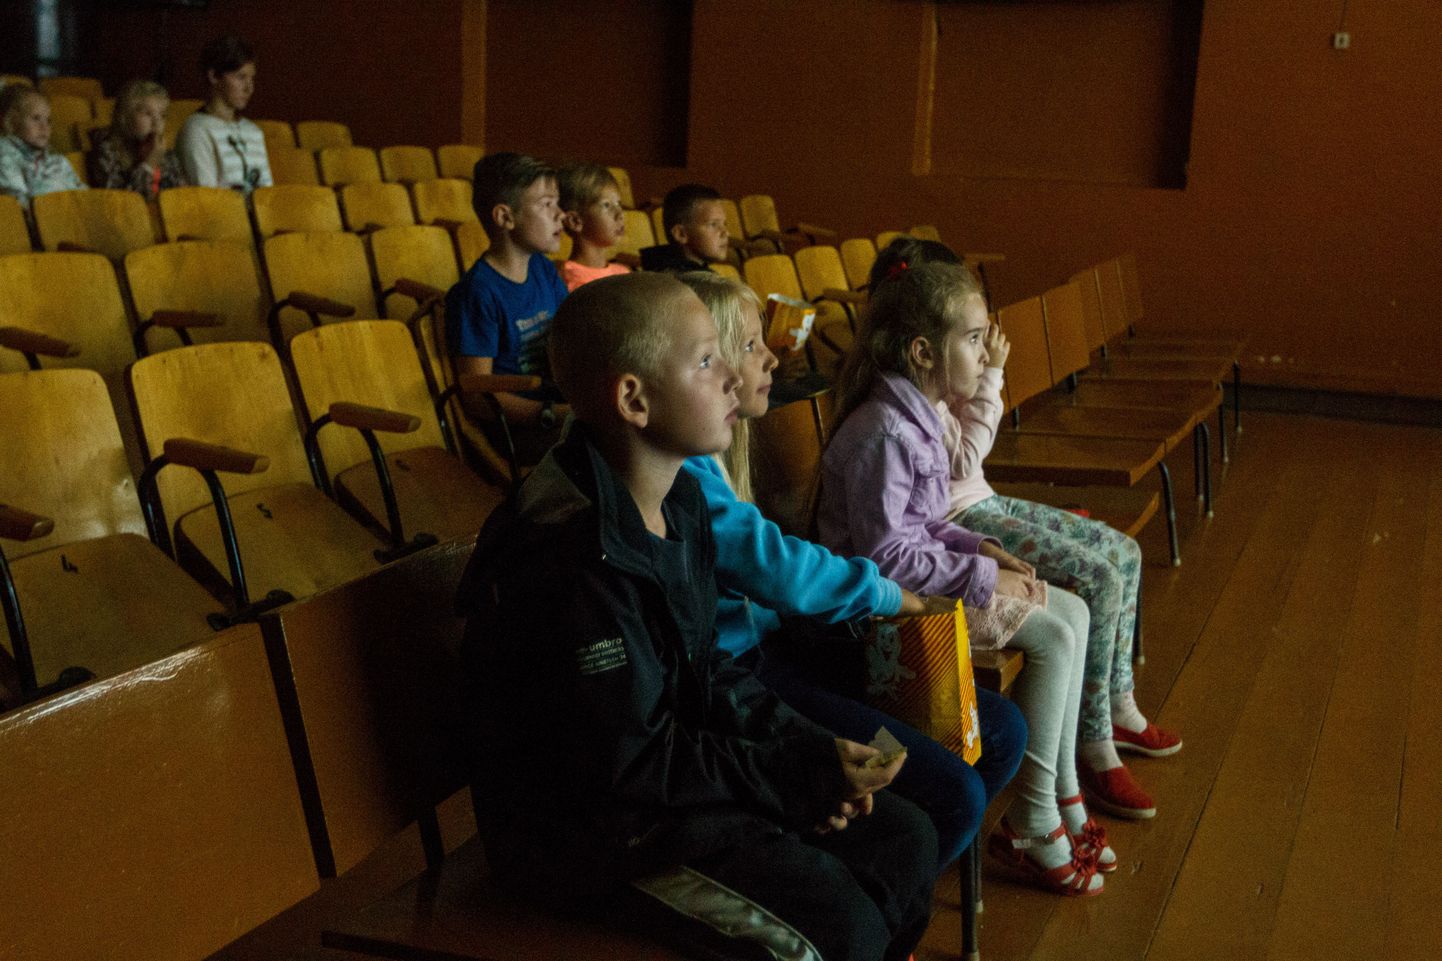 Tõrva kinomaja Koit sünnipäev. Lapsed vaatamas kino.